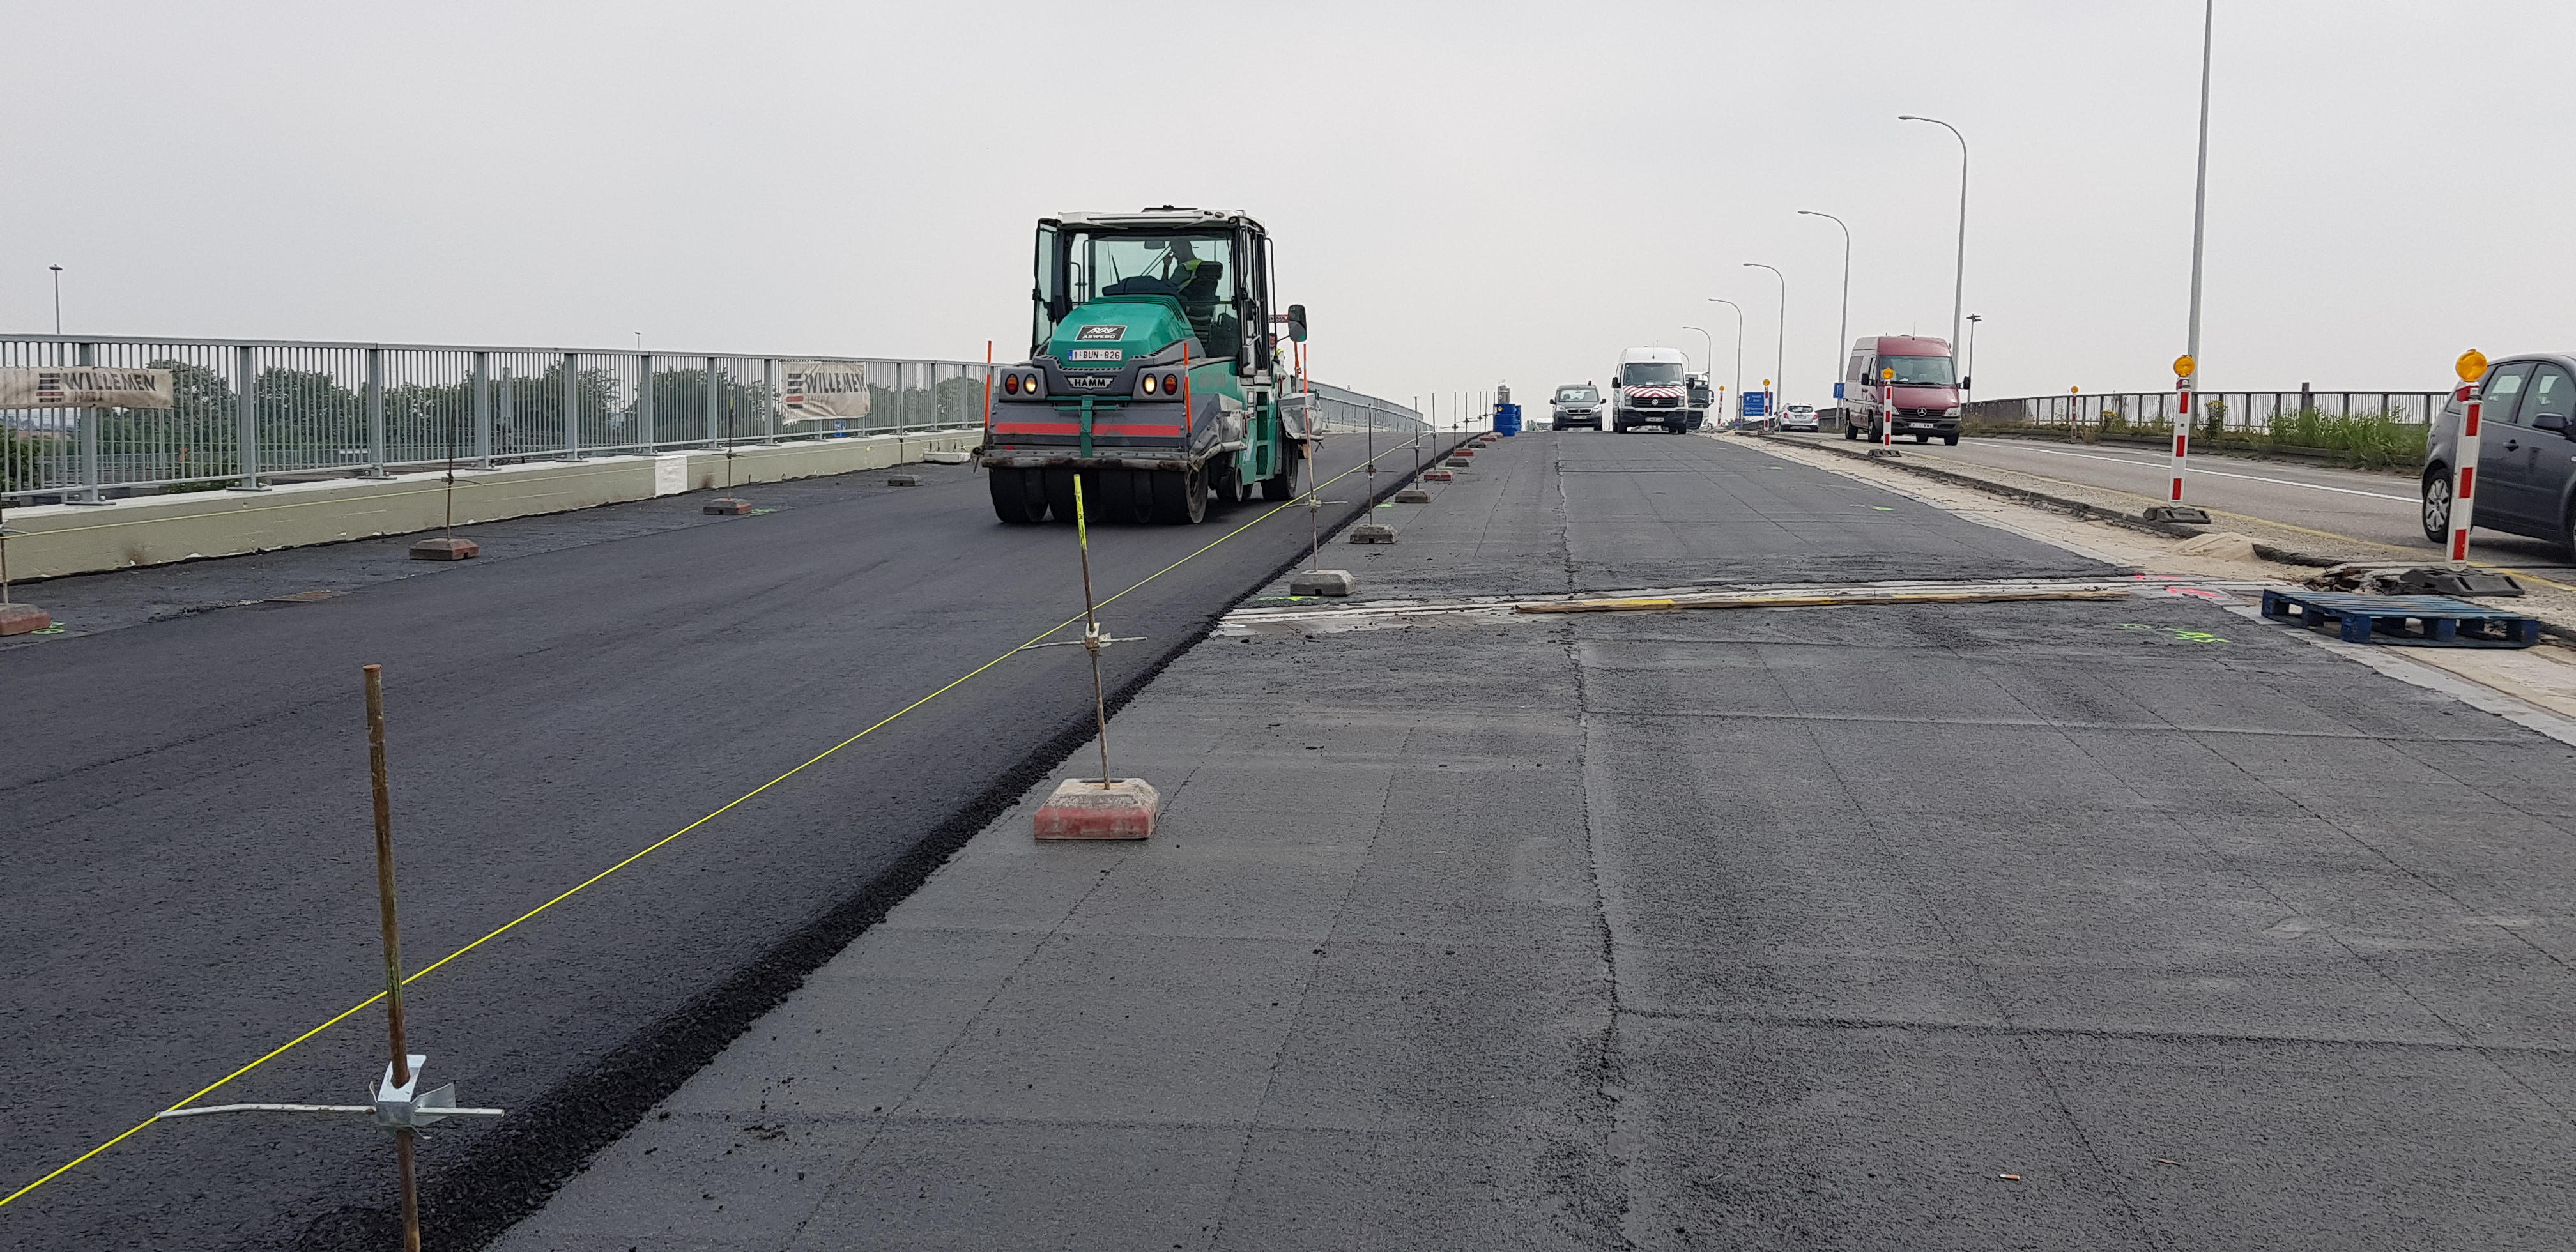 Heraanleg ring Aalst (R41): asfaltwerken Boudewijnlaan vanaf 22 juni